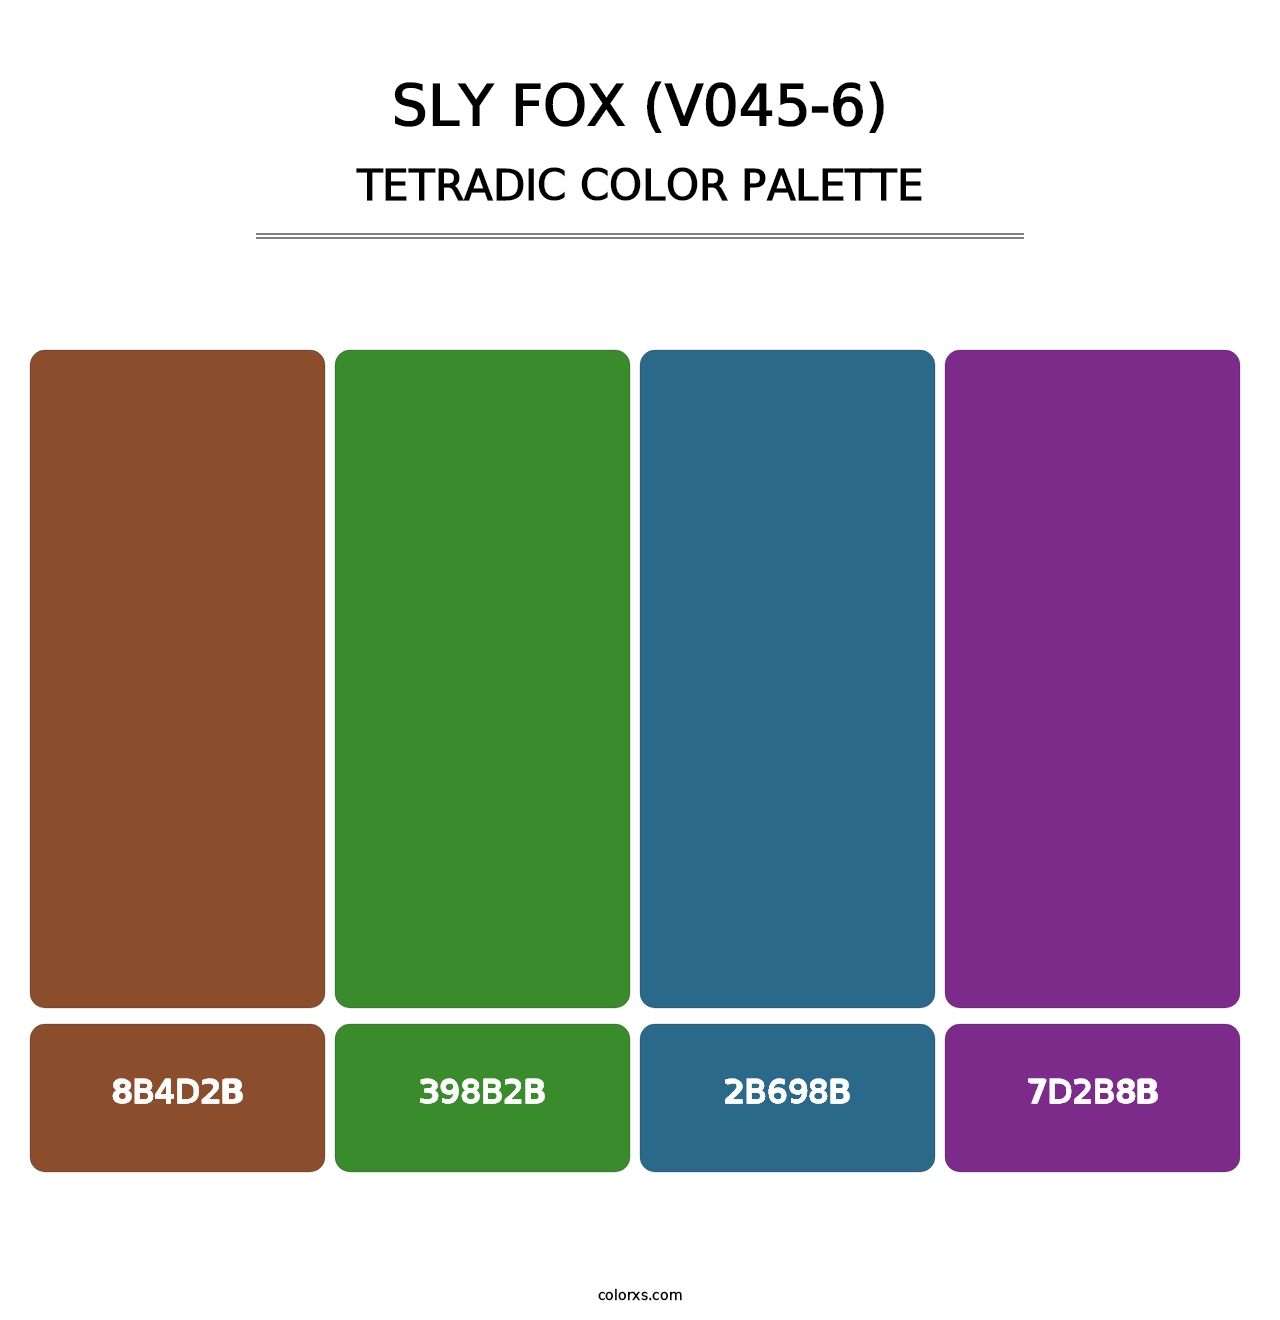 Sly Fox (V045-6) - Tetradic Color Palette